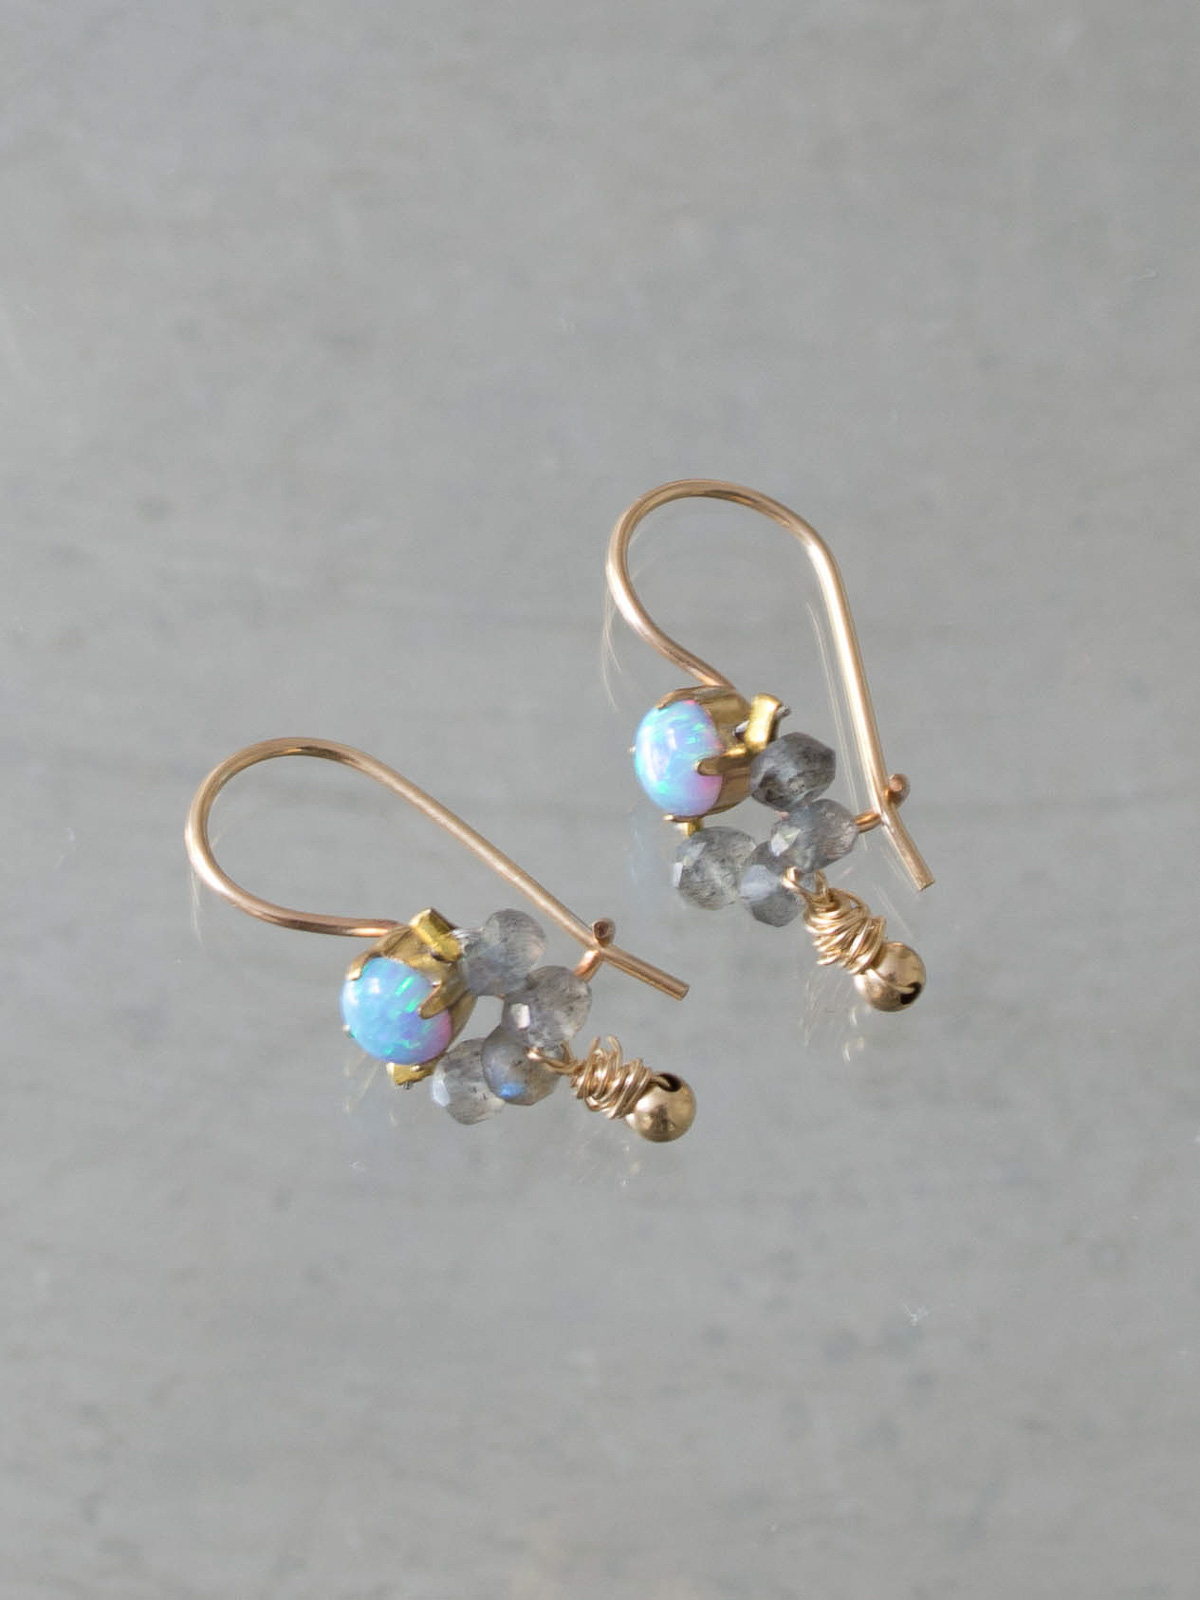 earrings Dancer blue opal, labradorite